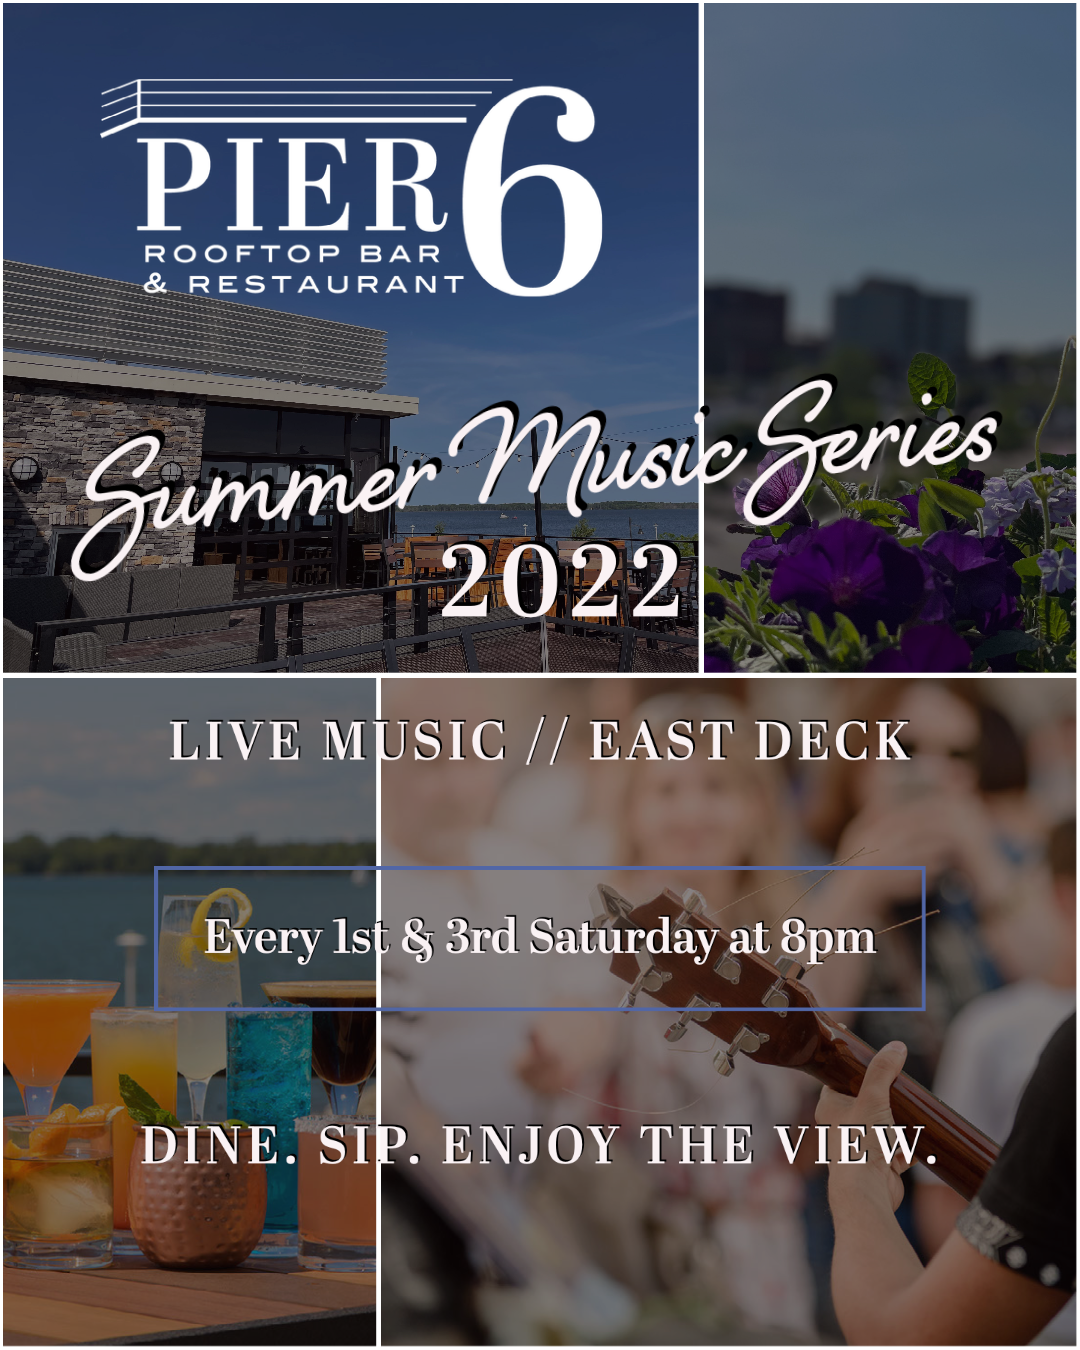 PIER 6 social post summer music series